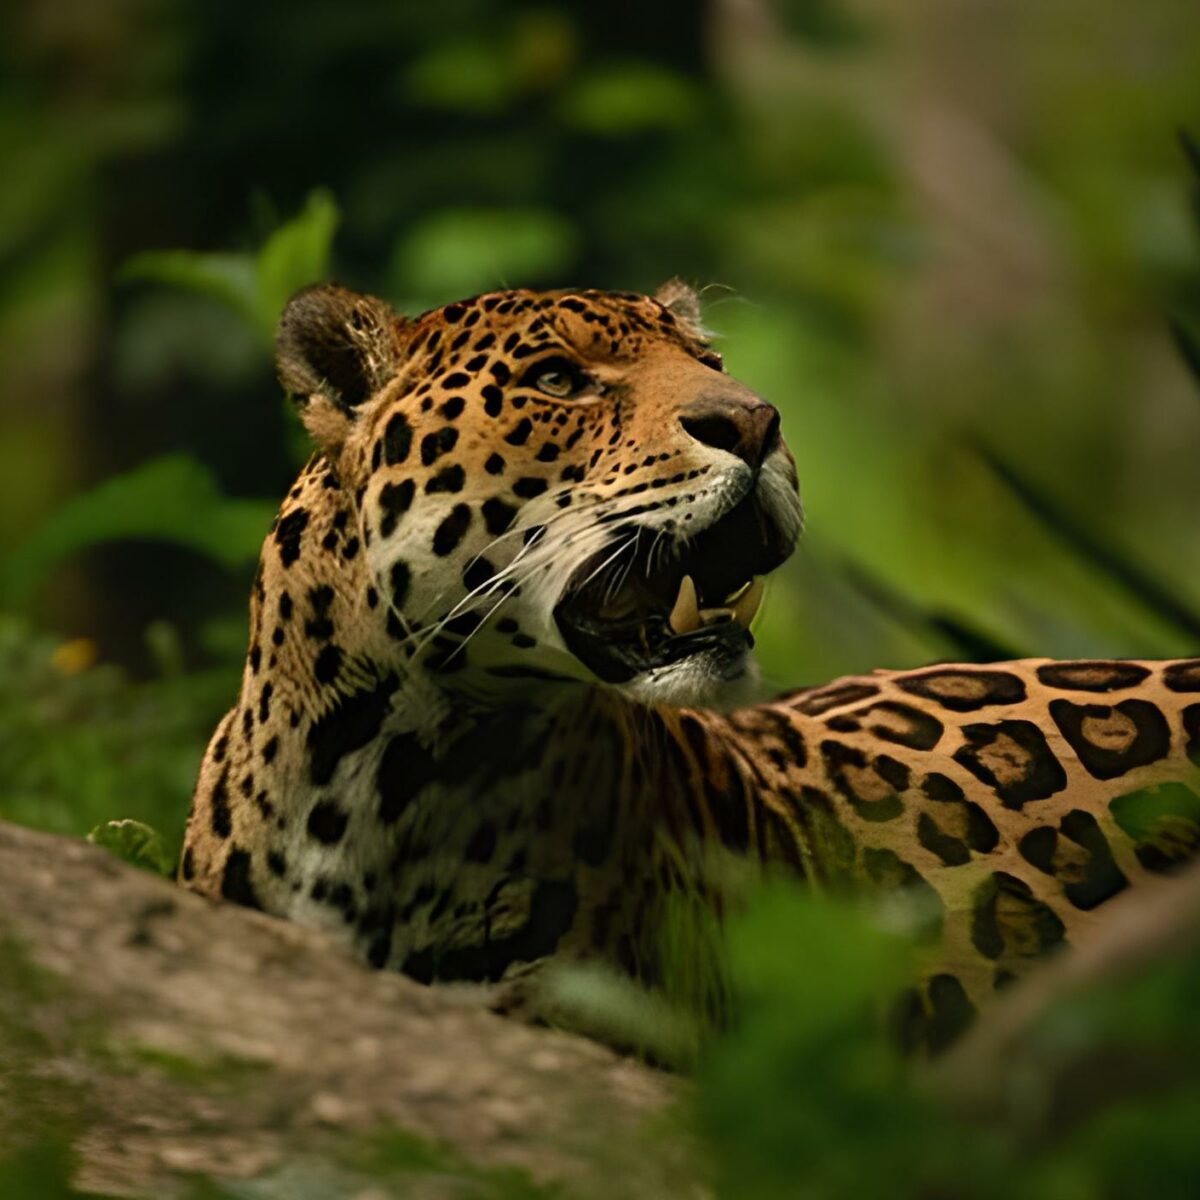 Meet The Jaguar at Bali Safari Park - Taman Safari Bali